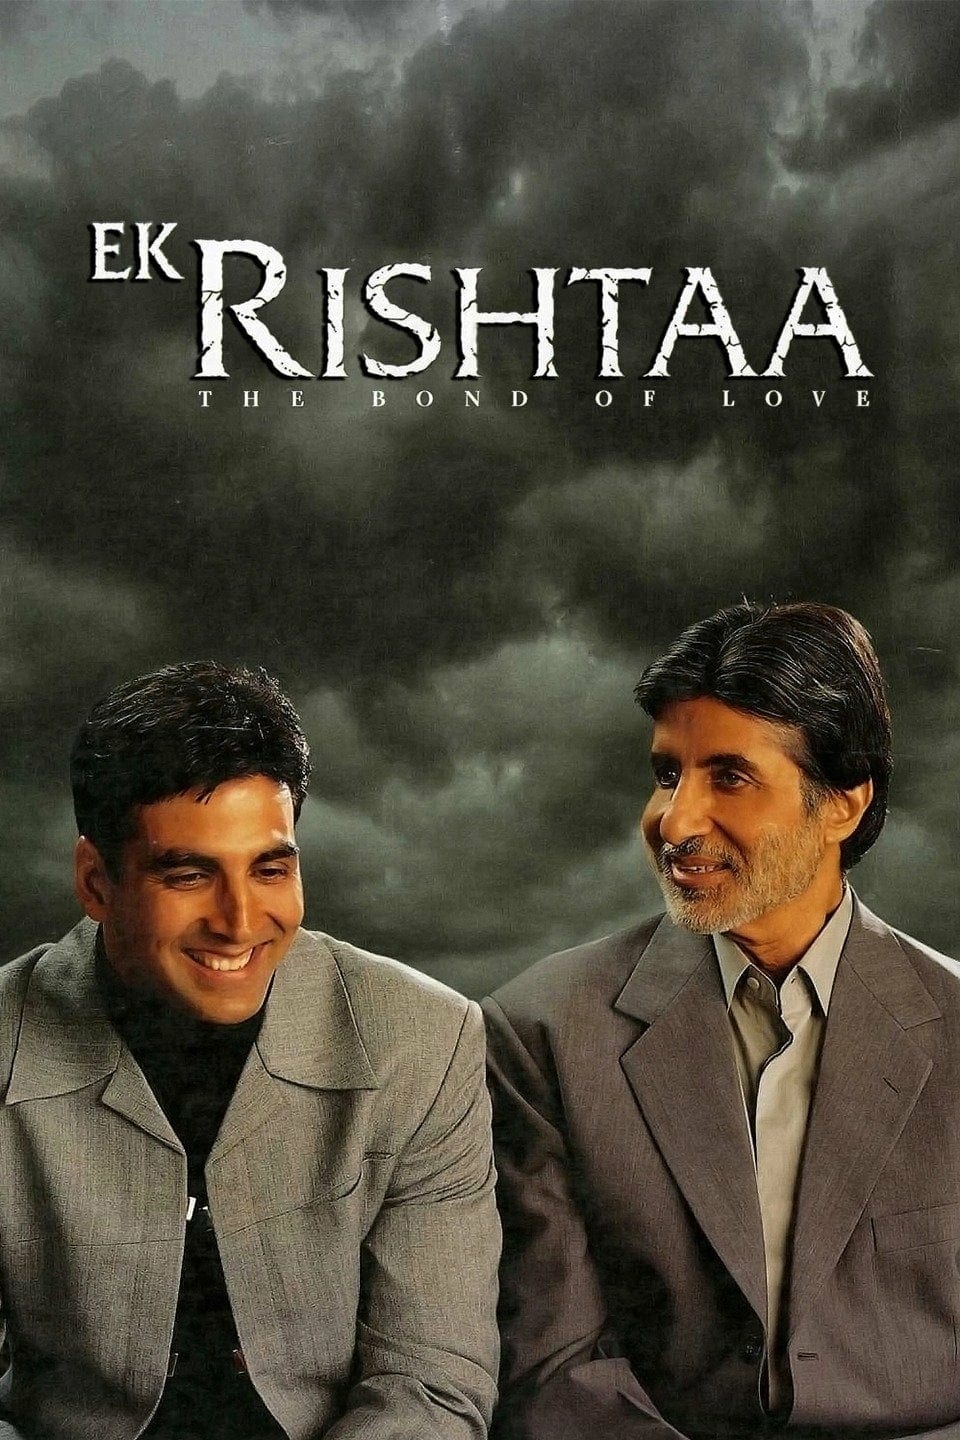 Poster for the movie "Ek Rishtaa: The Bond of Love"